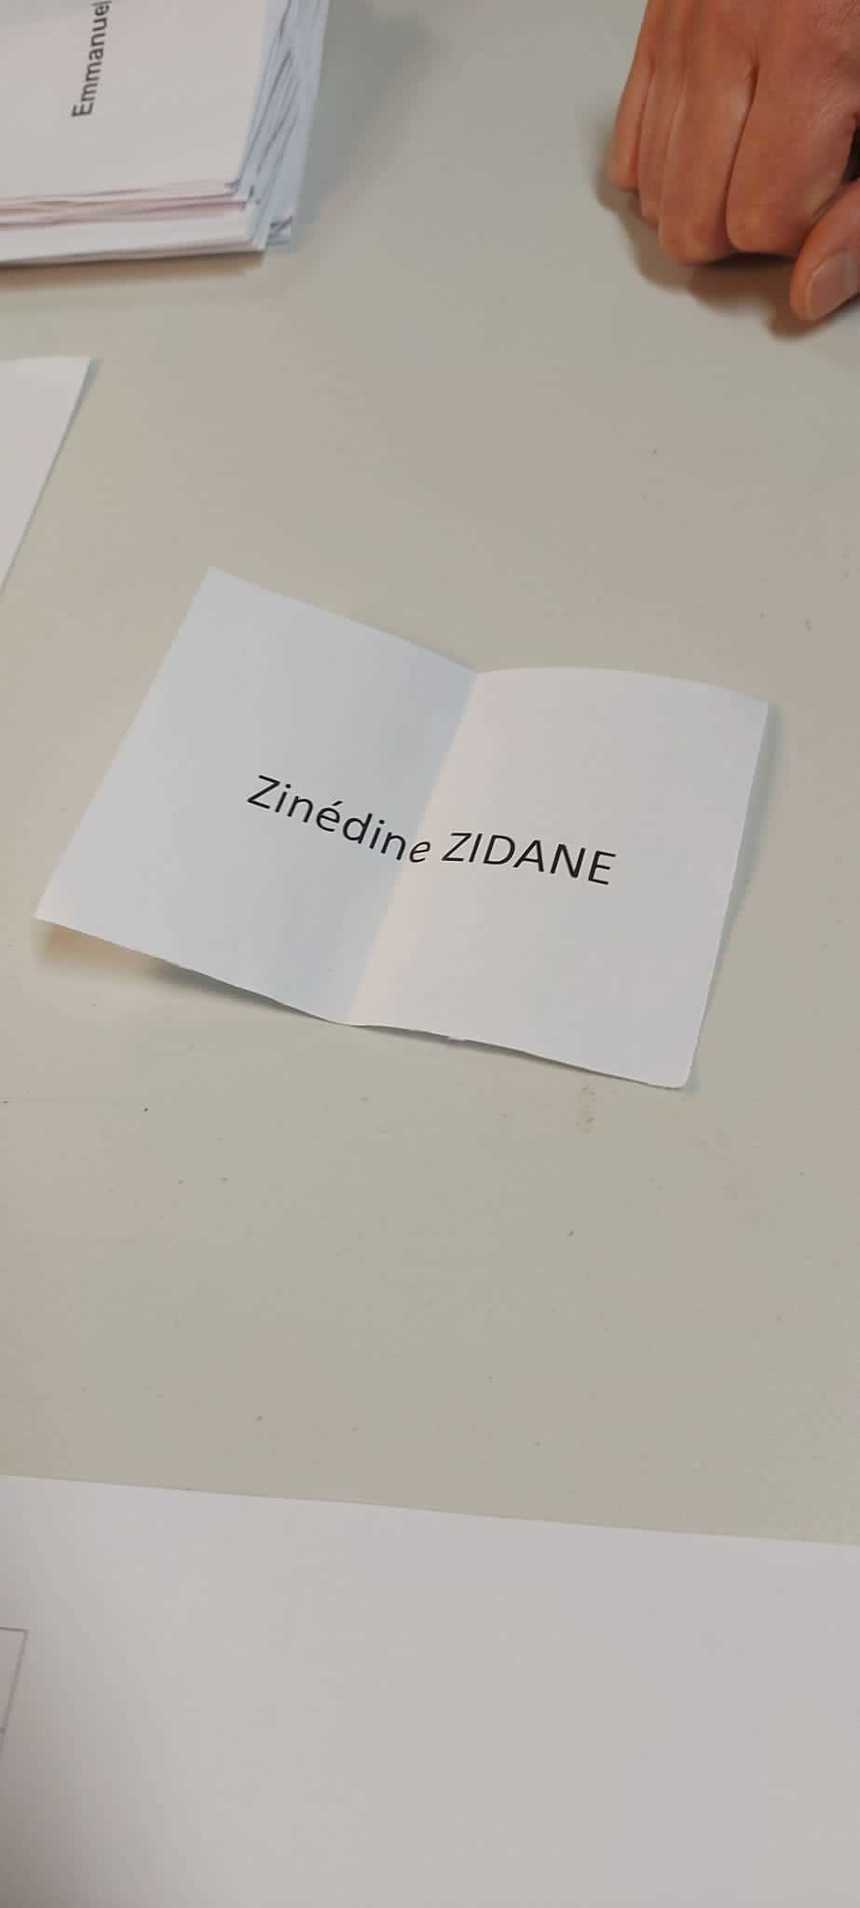 Zinedine Zidane şi Kylian Mbappe au primit câte un vot la alegerile prezidenţiale din Franţa